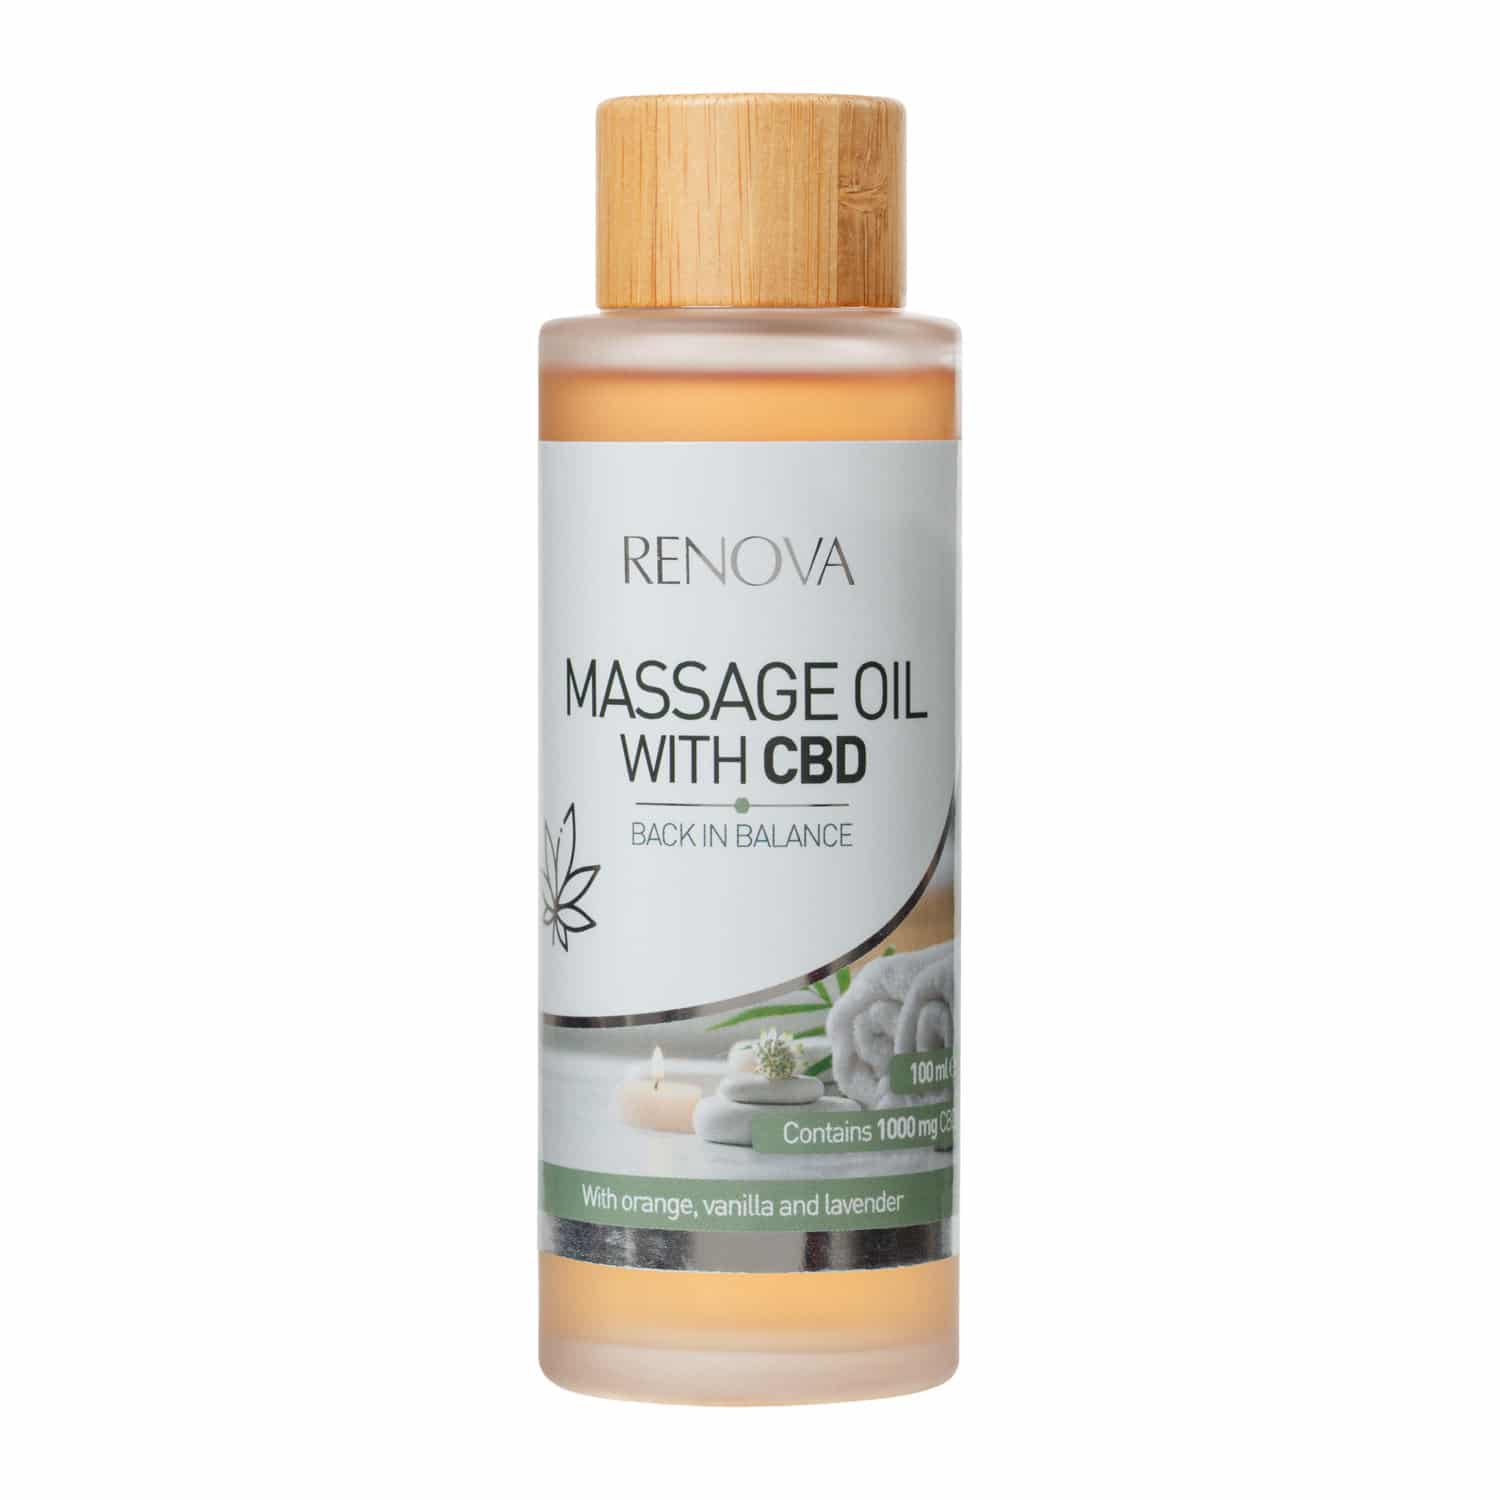 A bottle of Renova Massage Oil with CBD (100ml) in Lavender, vanilla & orange.